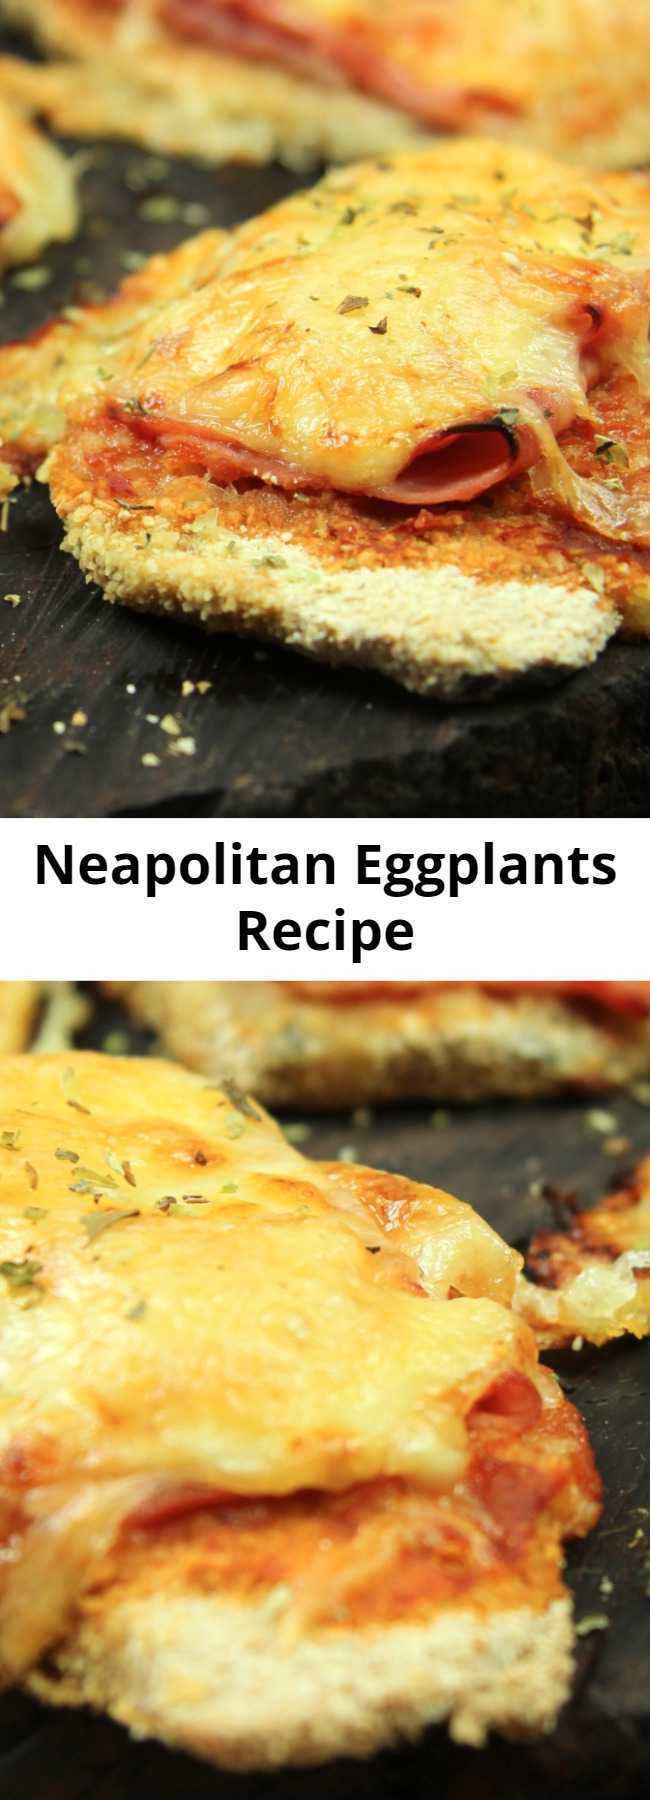 Neapolitan Eggplants Recipe